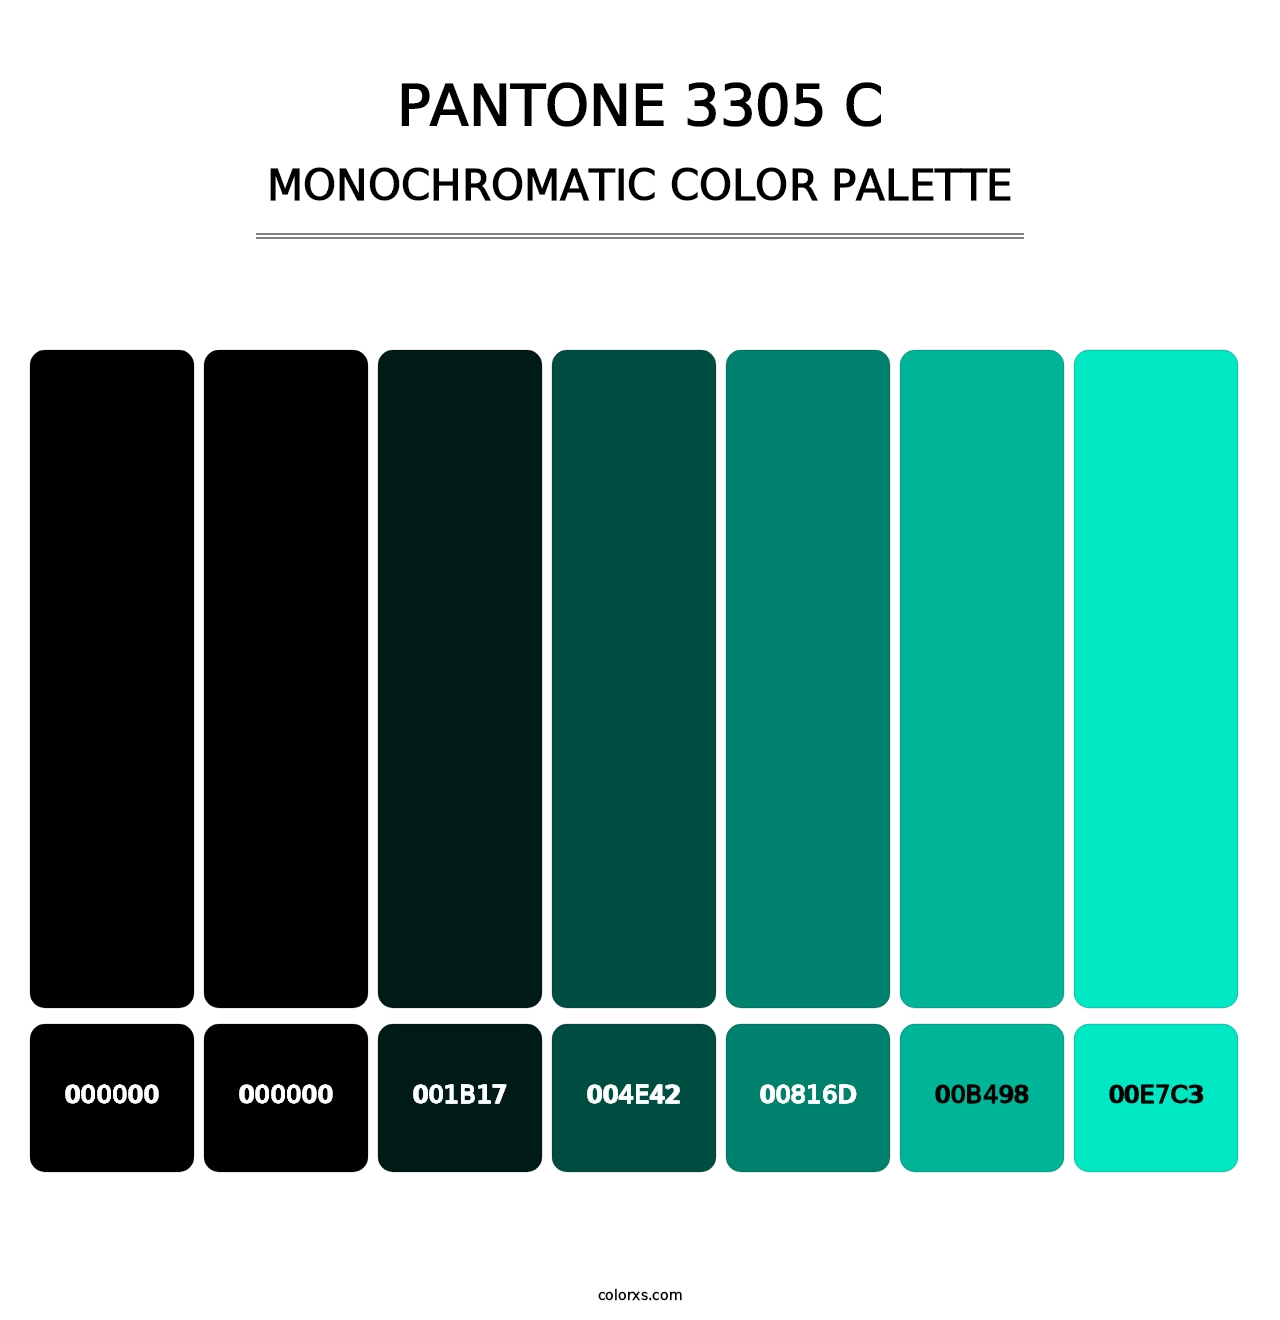 PANTONE 3305 C - Monochromatic Color Palette